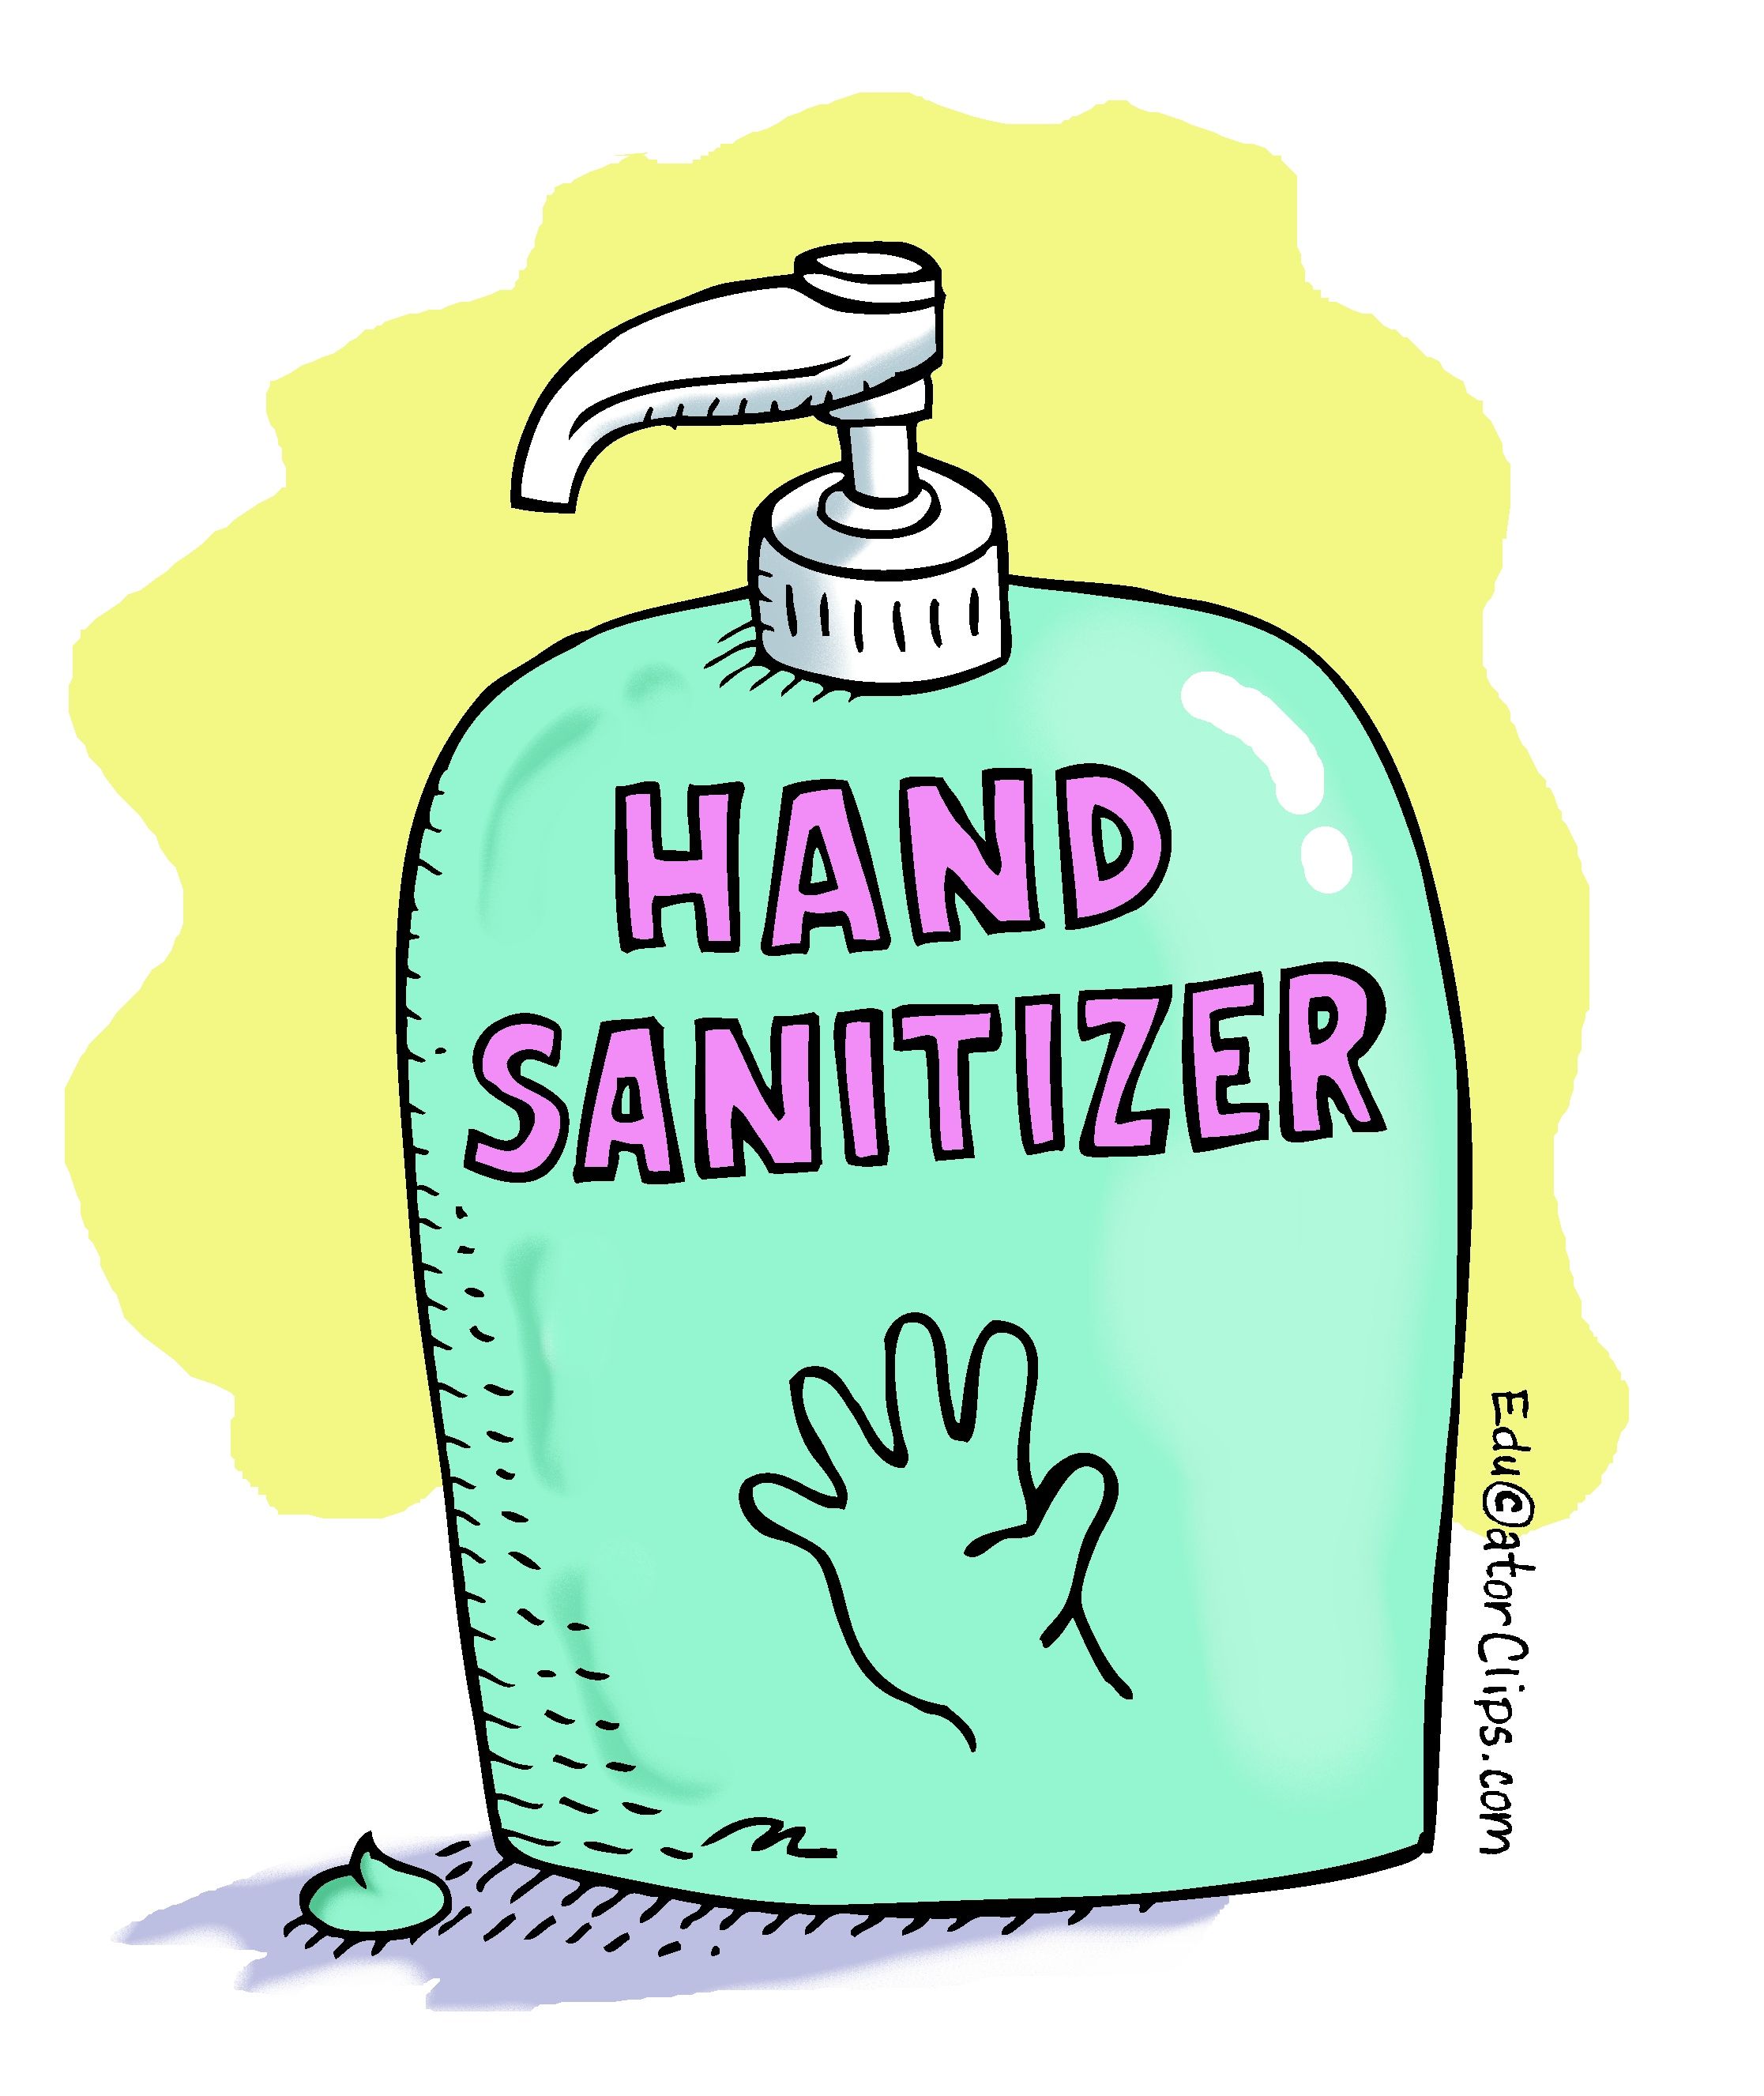 Hand Sanitizer Clip Art, #handsanitizer, #teacherclipart. Hand sanitizer, Clip art, Hand washing poster